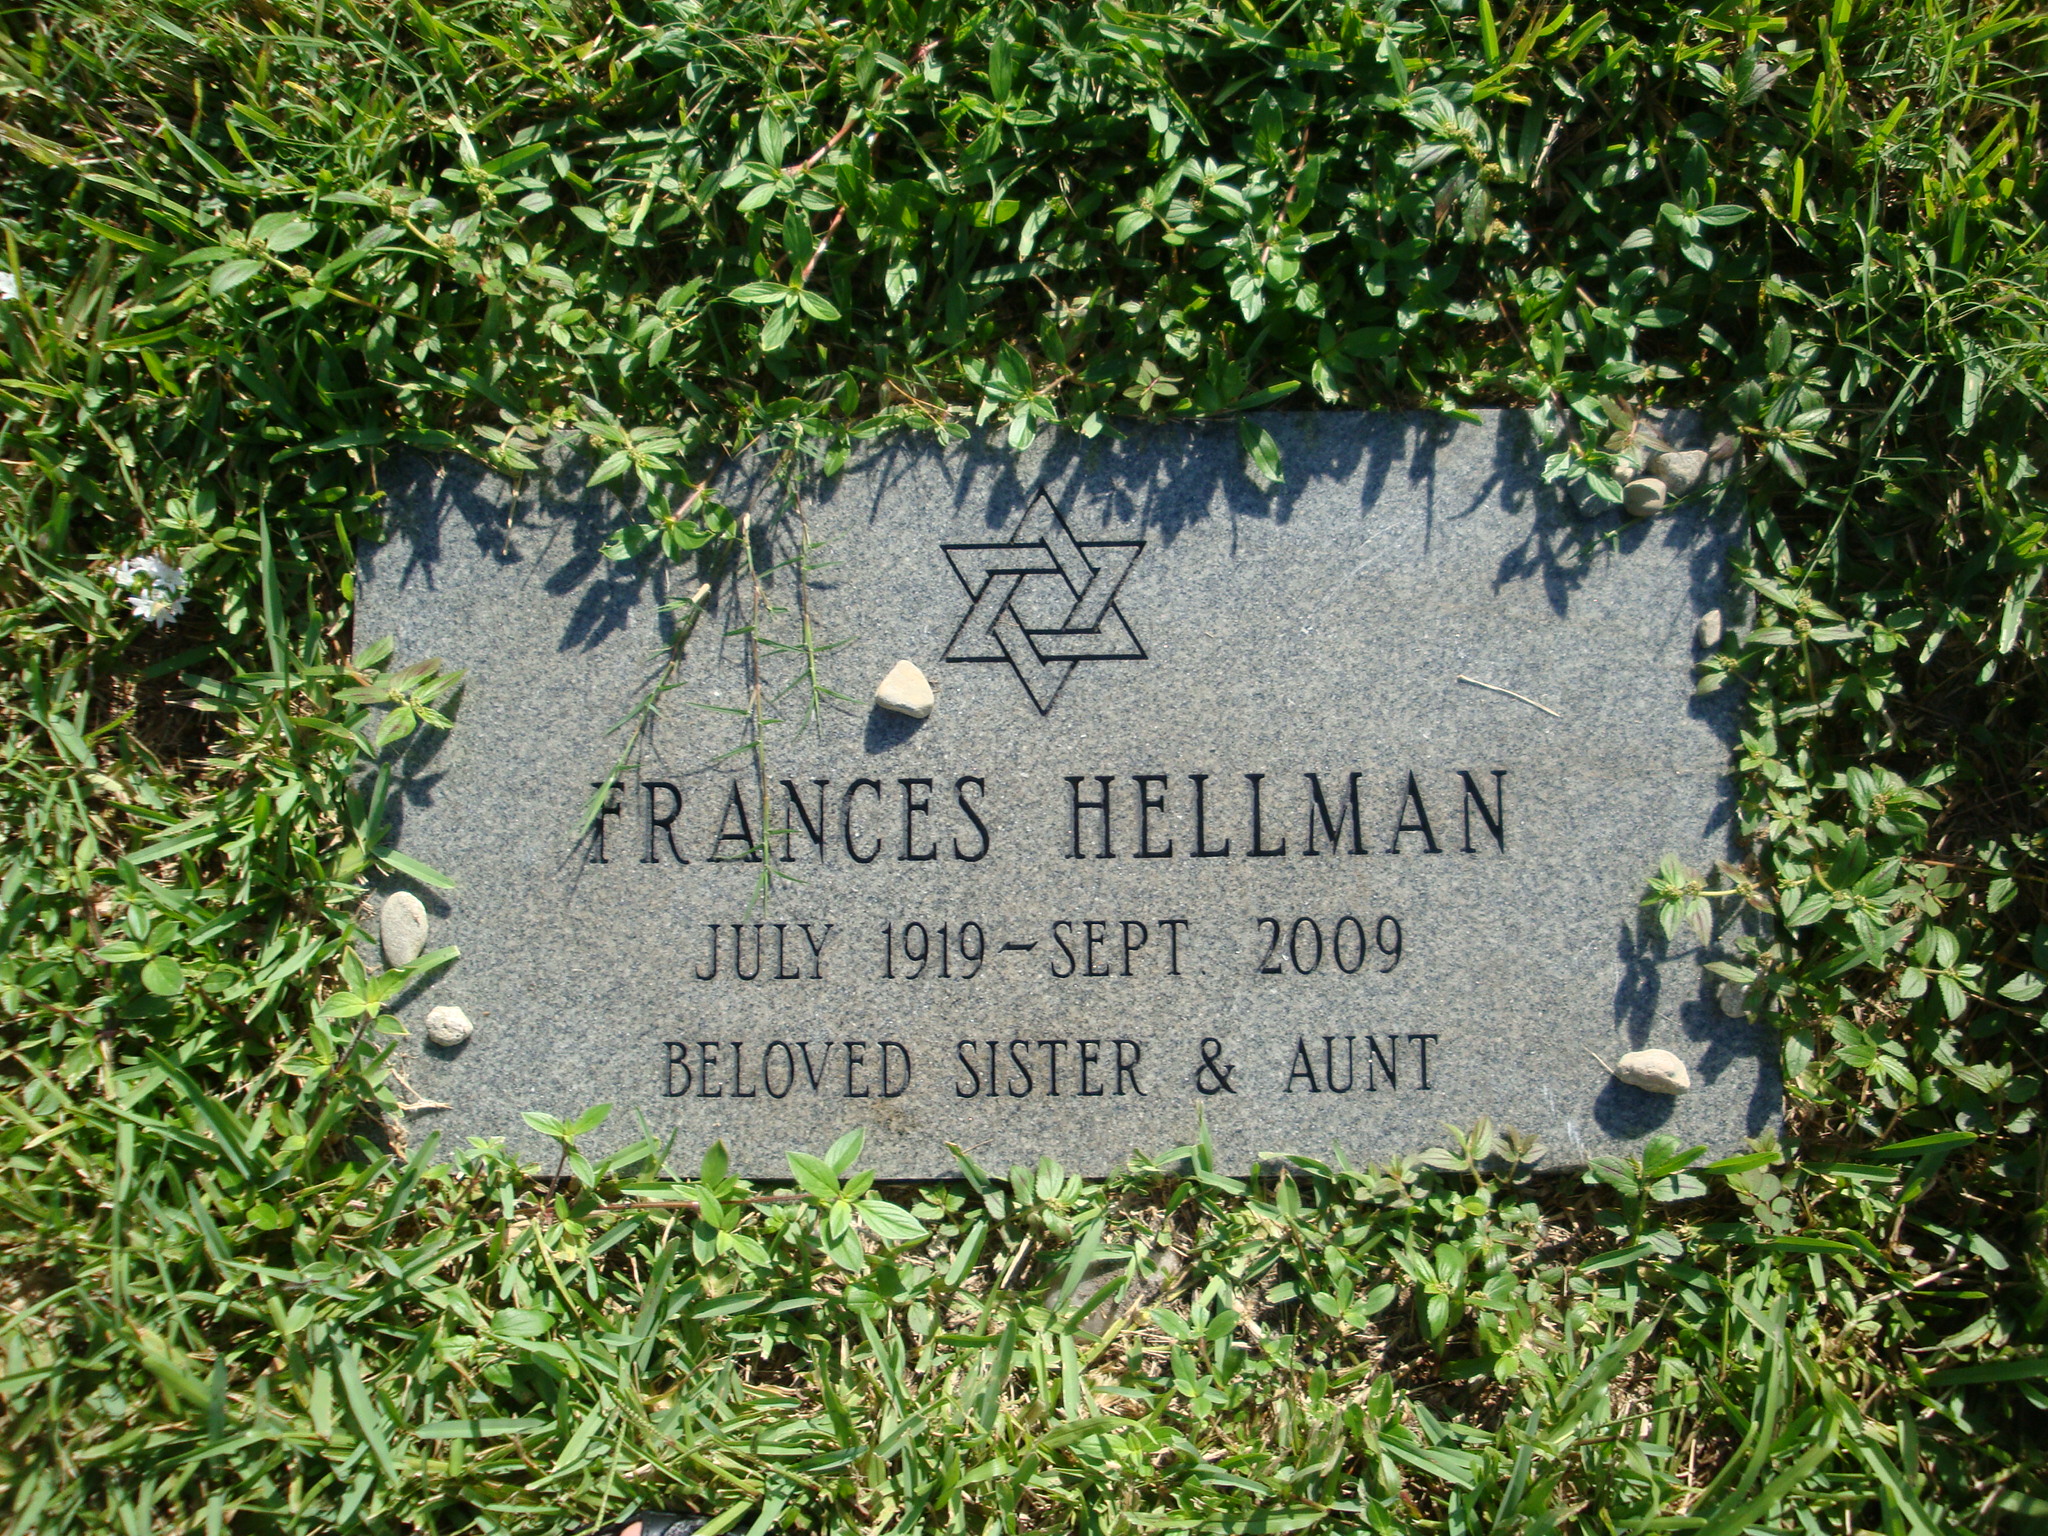 Frances Hellman